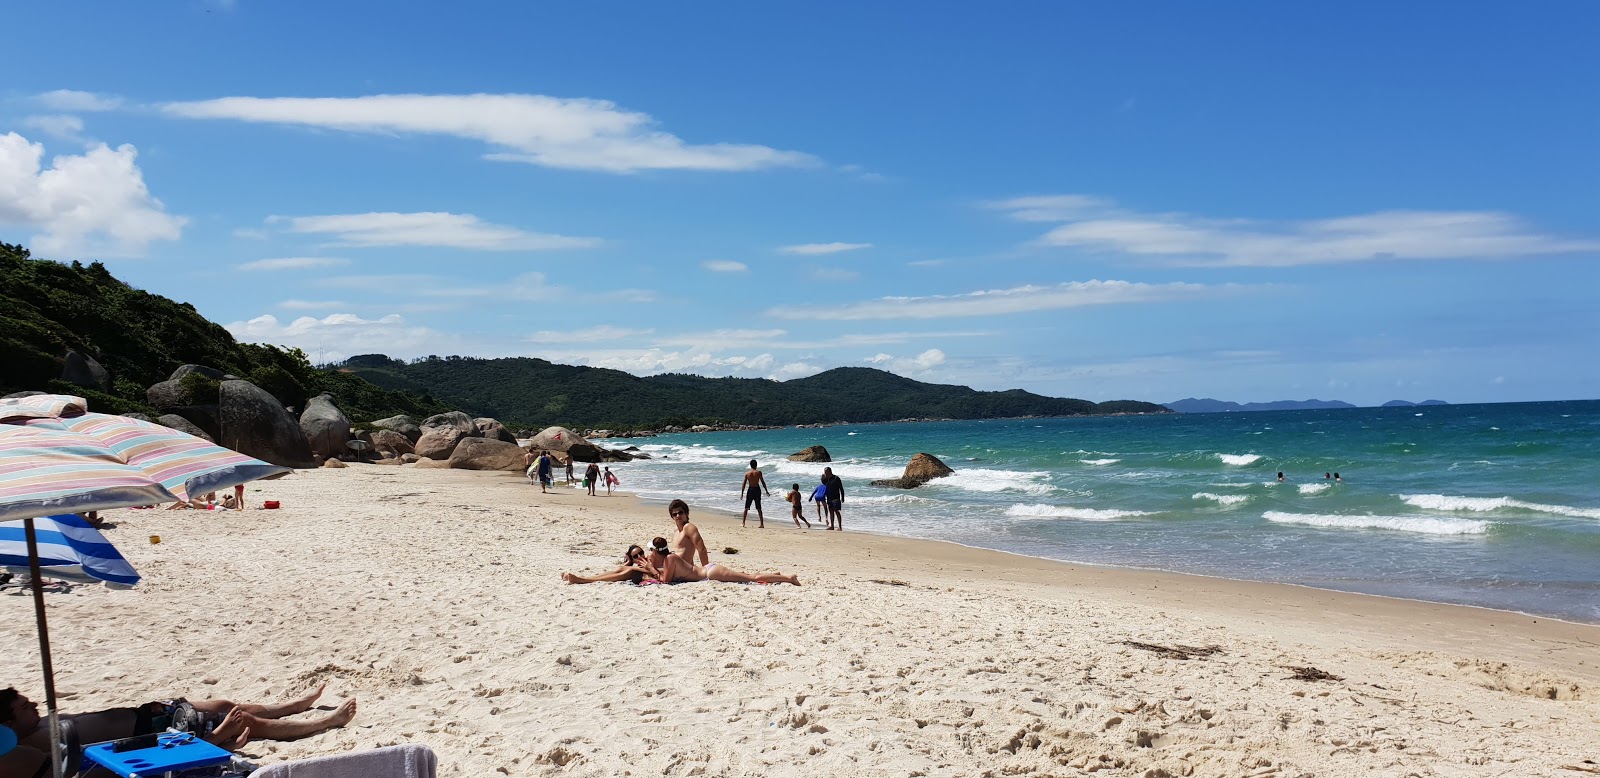 Praia das Cordas的照片 带有碧绿色纯水表面